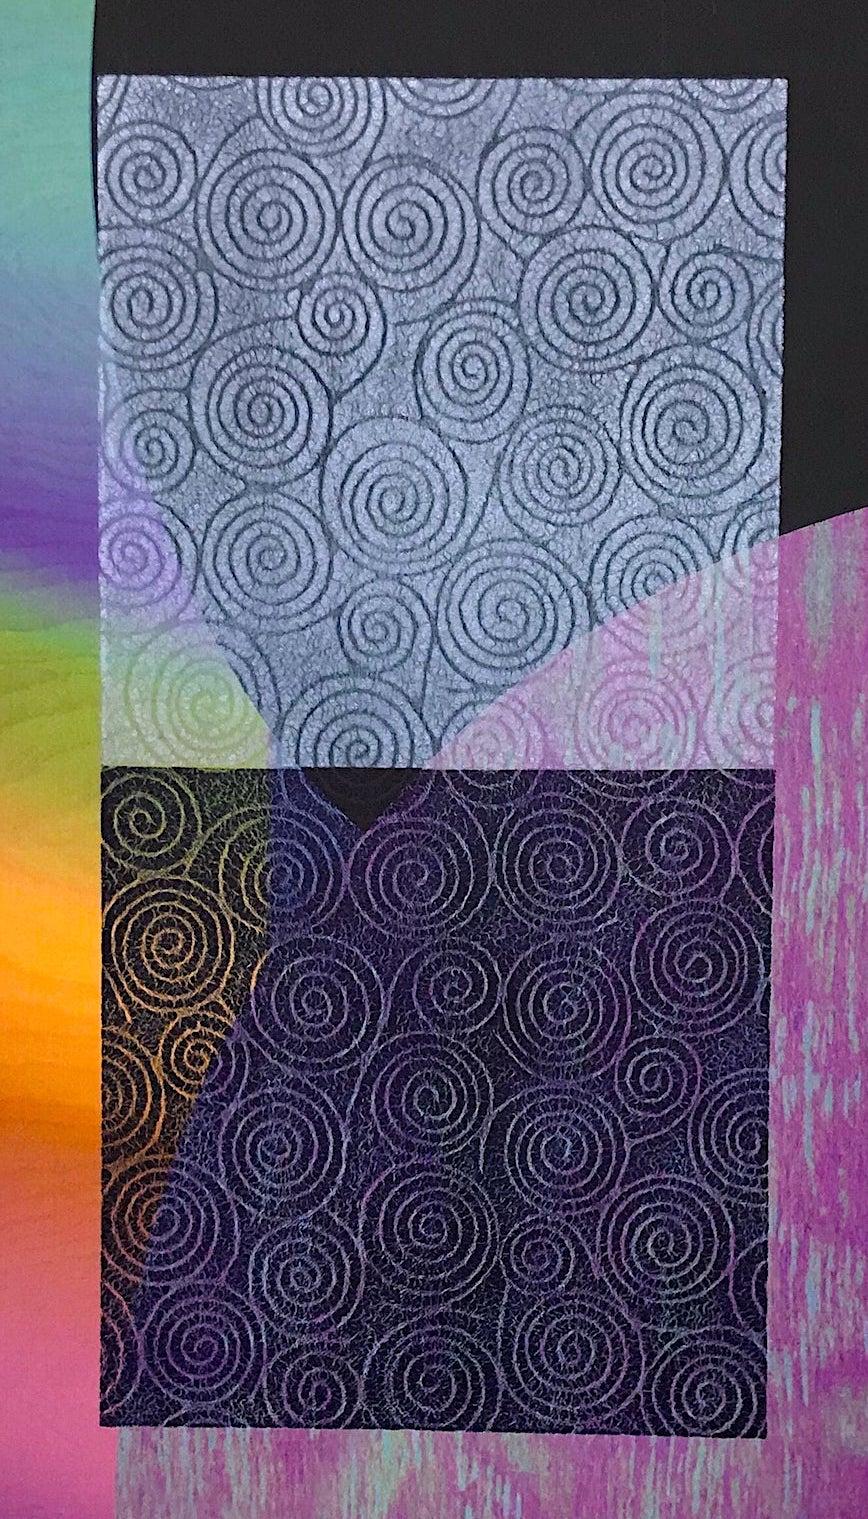 RECITALS est une impression mixte en édition limitée du célèbre artiste afro-américain Sam Gilliam, créée à l'aide de techniques de jet d'encre d'archives, de relief et de pochoir. Cette composition géométrique verticale, aux couleurs de